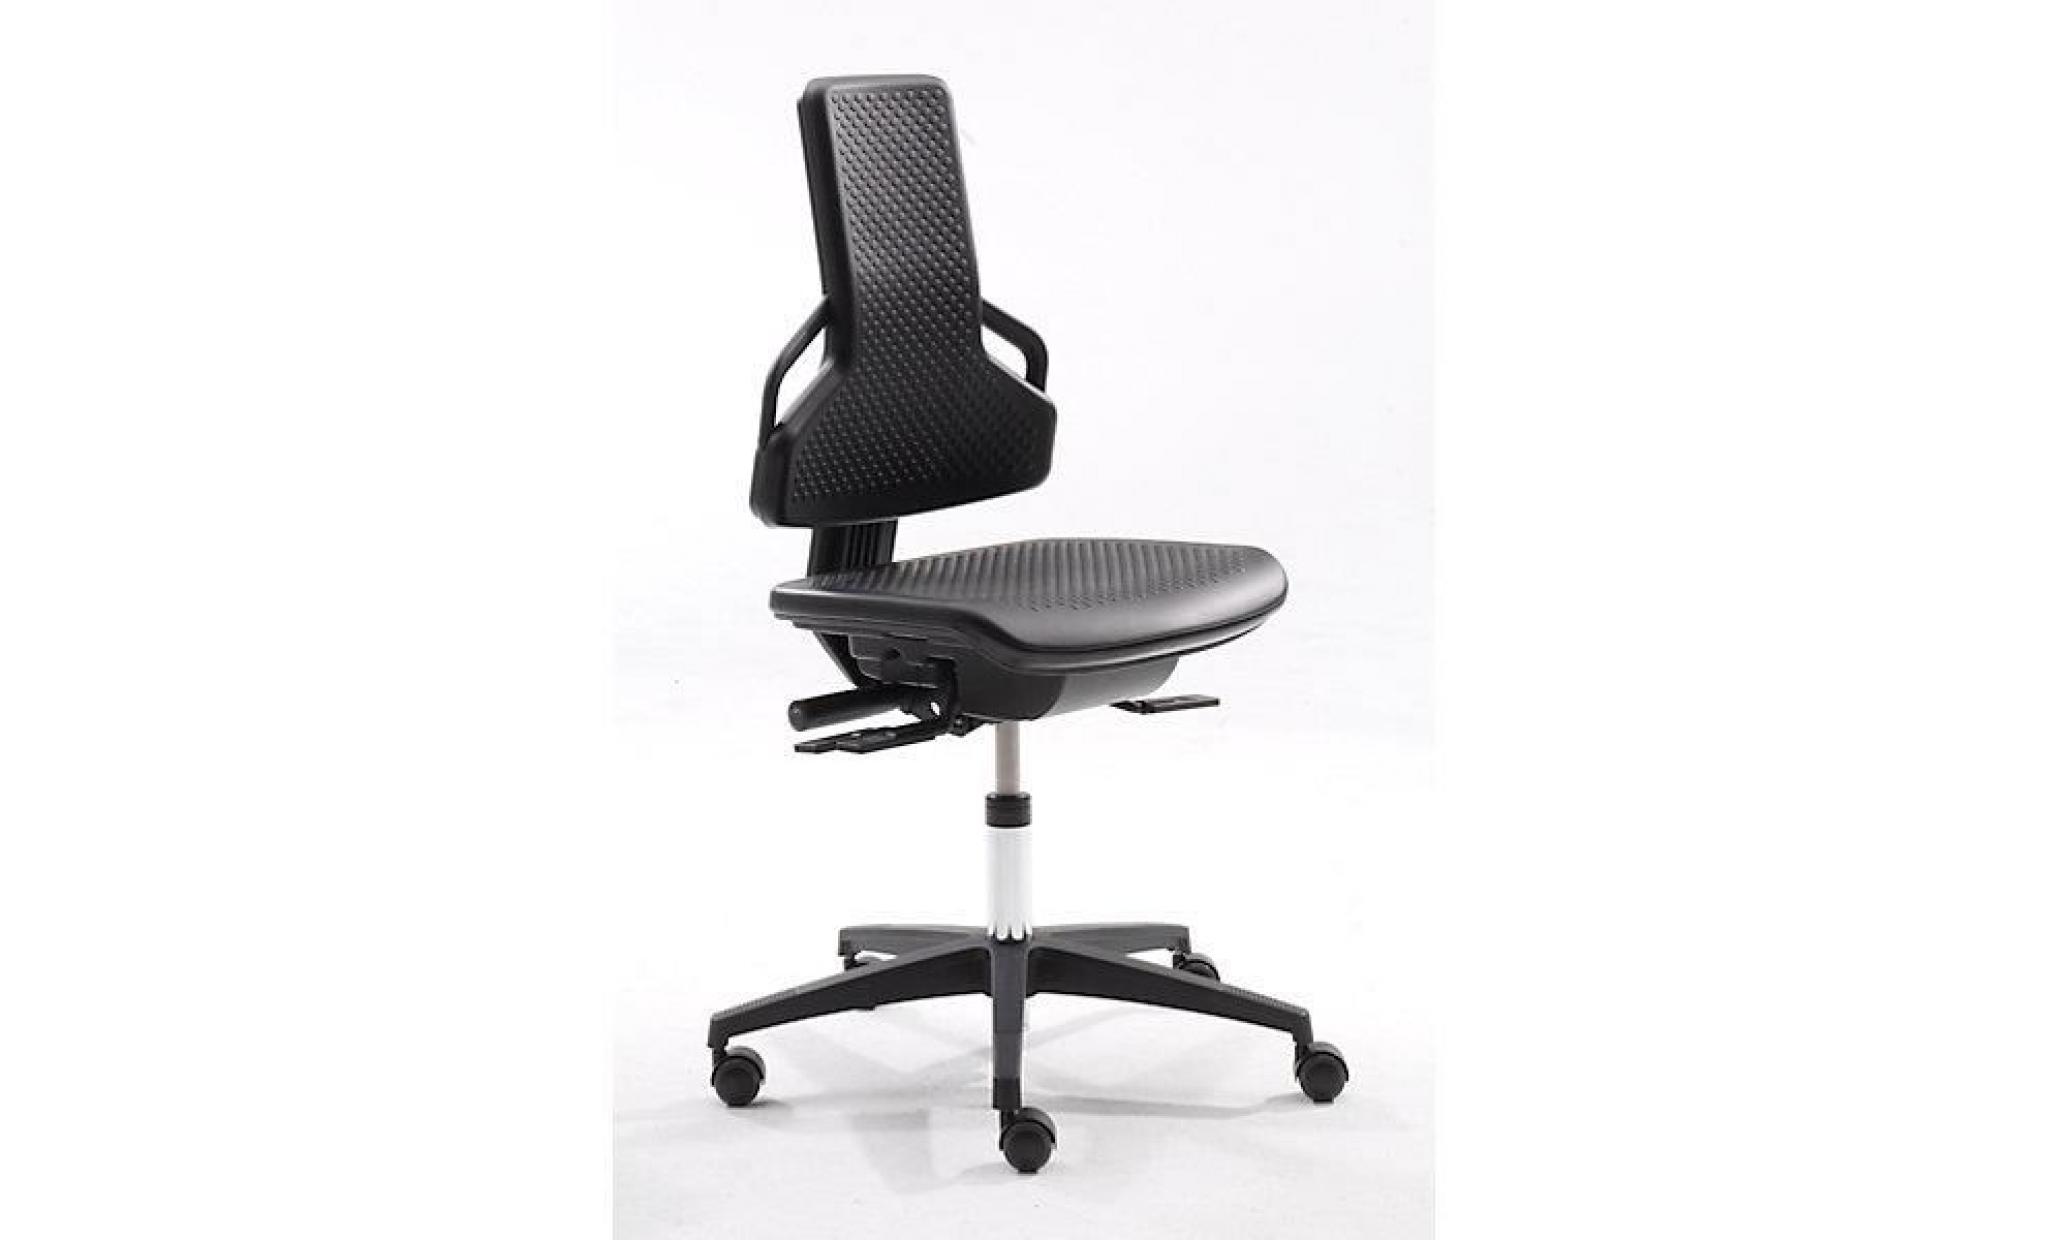 dauphin siège d'atelier   avec roulettes   habillage tissu anthracite   chaise chaises siège d'atelier siège pivotant sièges pas cher